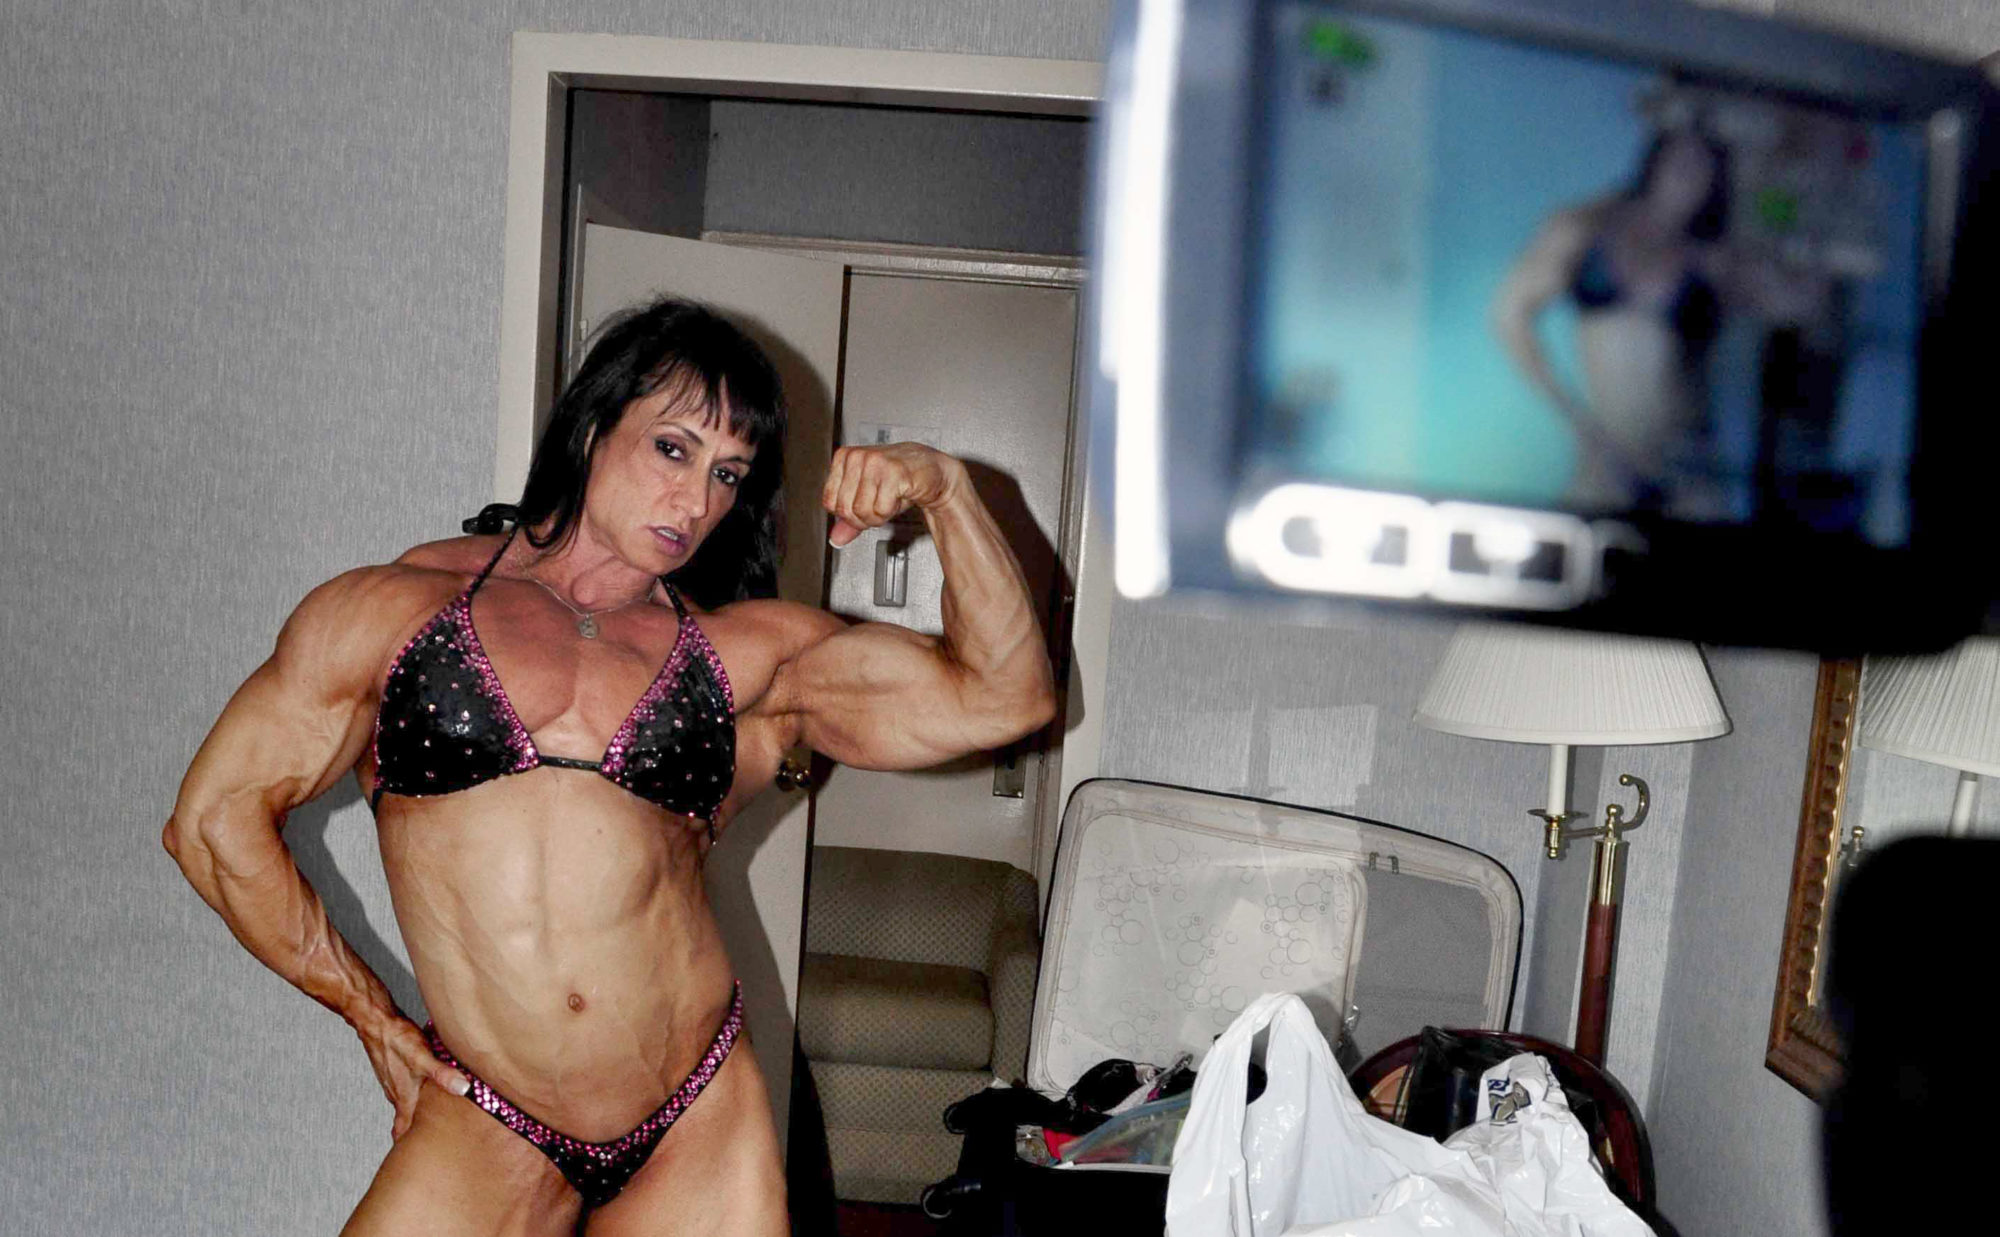 bodybuilder in bikini flexes bicep in front of video camera in a hotel room